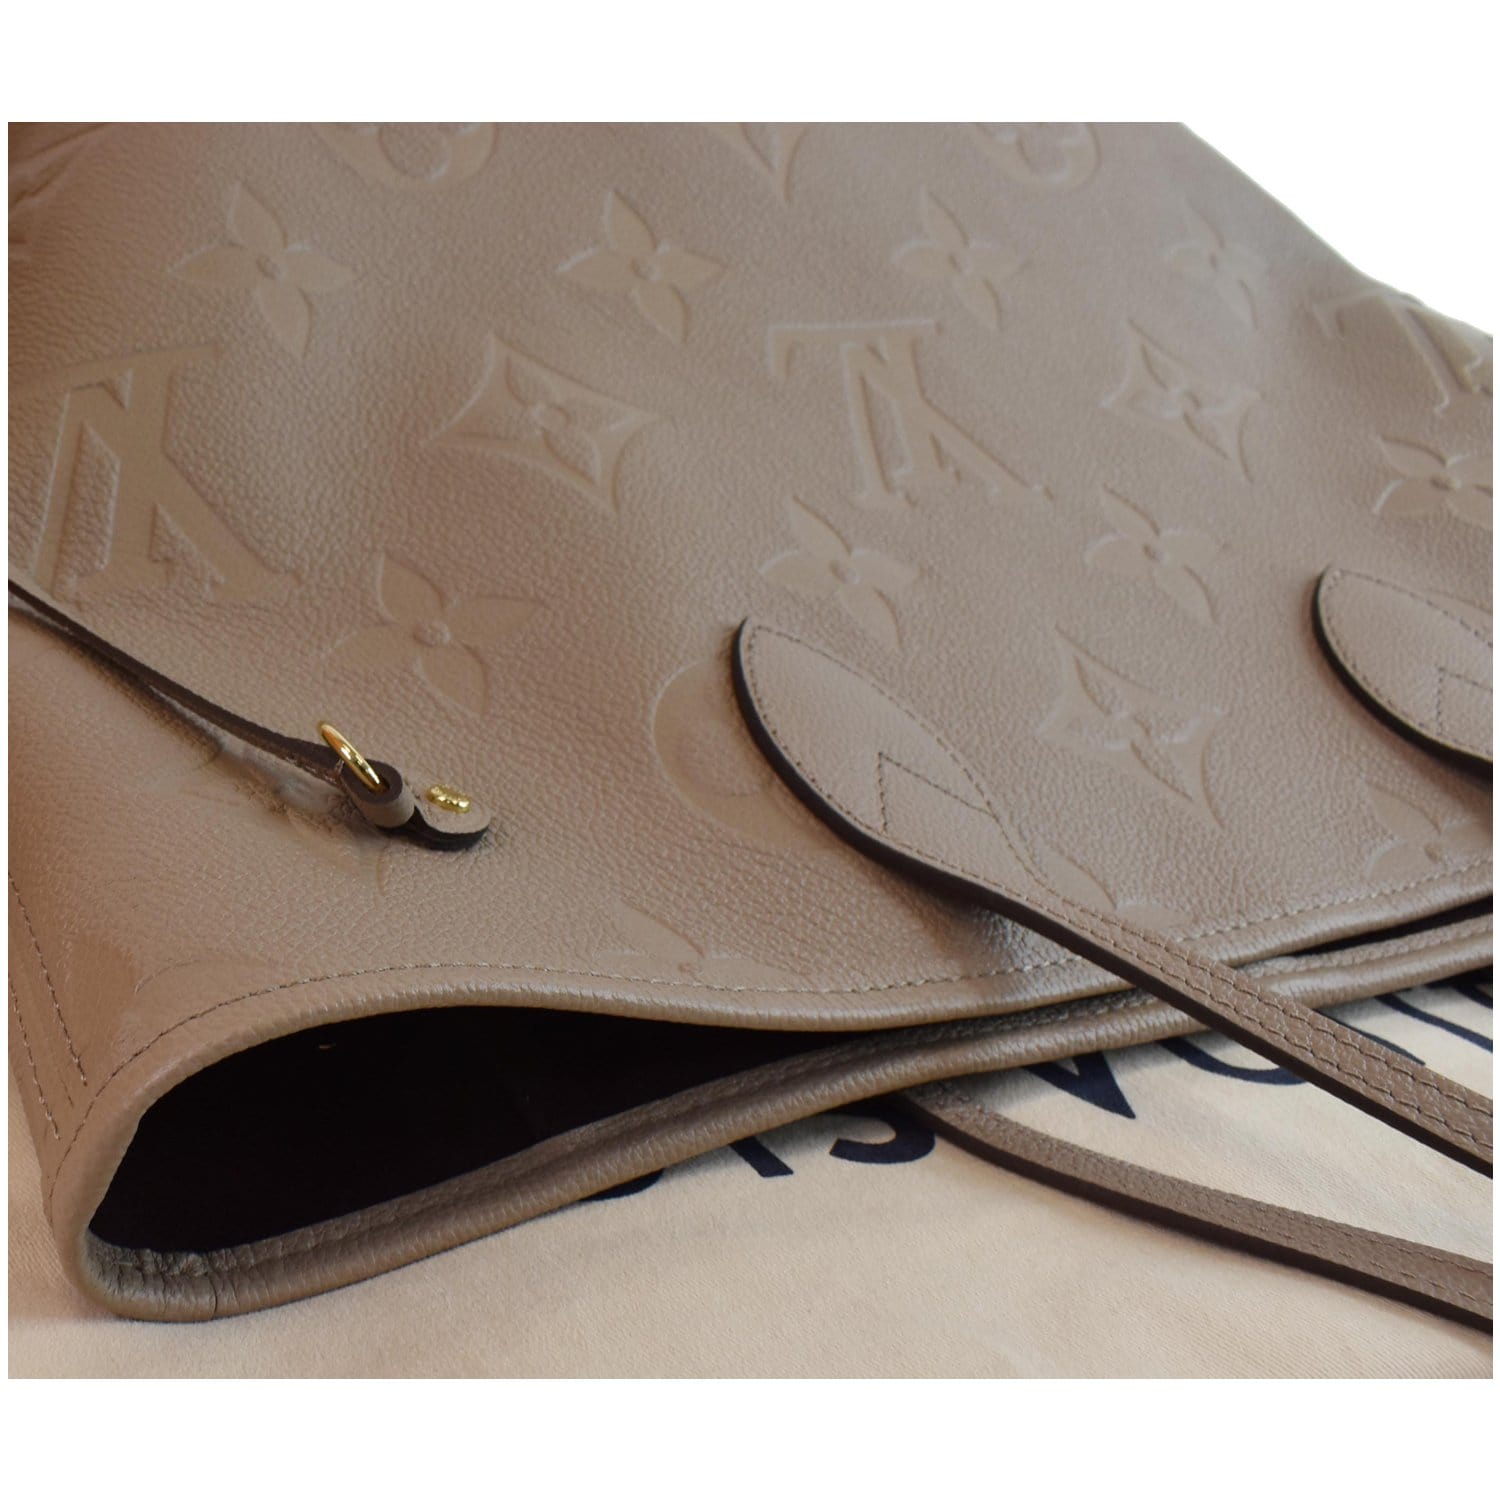 Louis Vuitton Neverfull MM Monogram Empreinte Leather in Beige